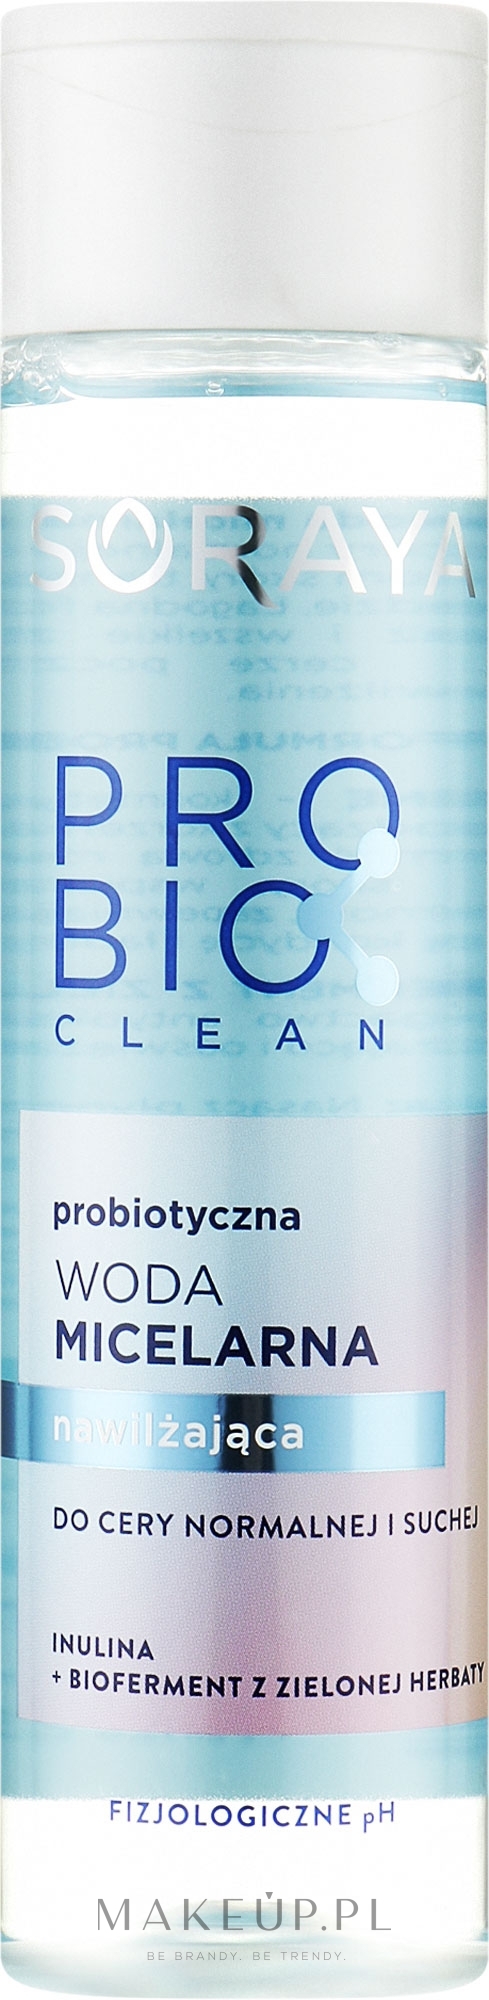 Probiotyczna woda micelarna nawilżająca do cery normalnej i suchej - Soraya ProBioclean Micellar Water — Zdjęcie 250 ml